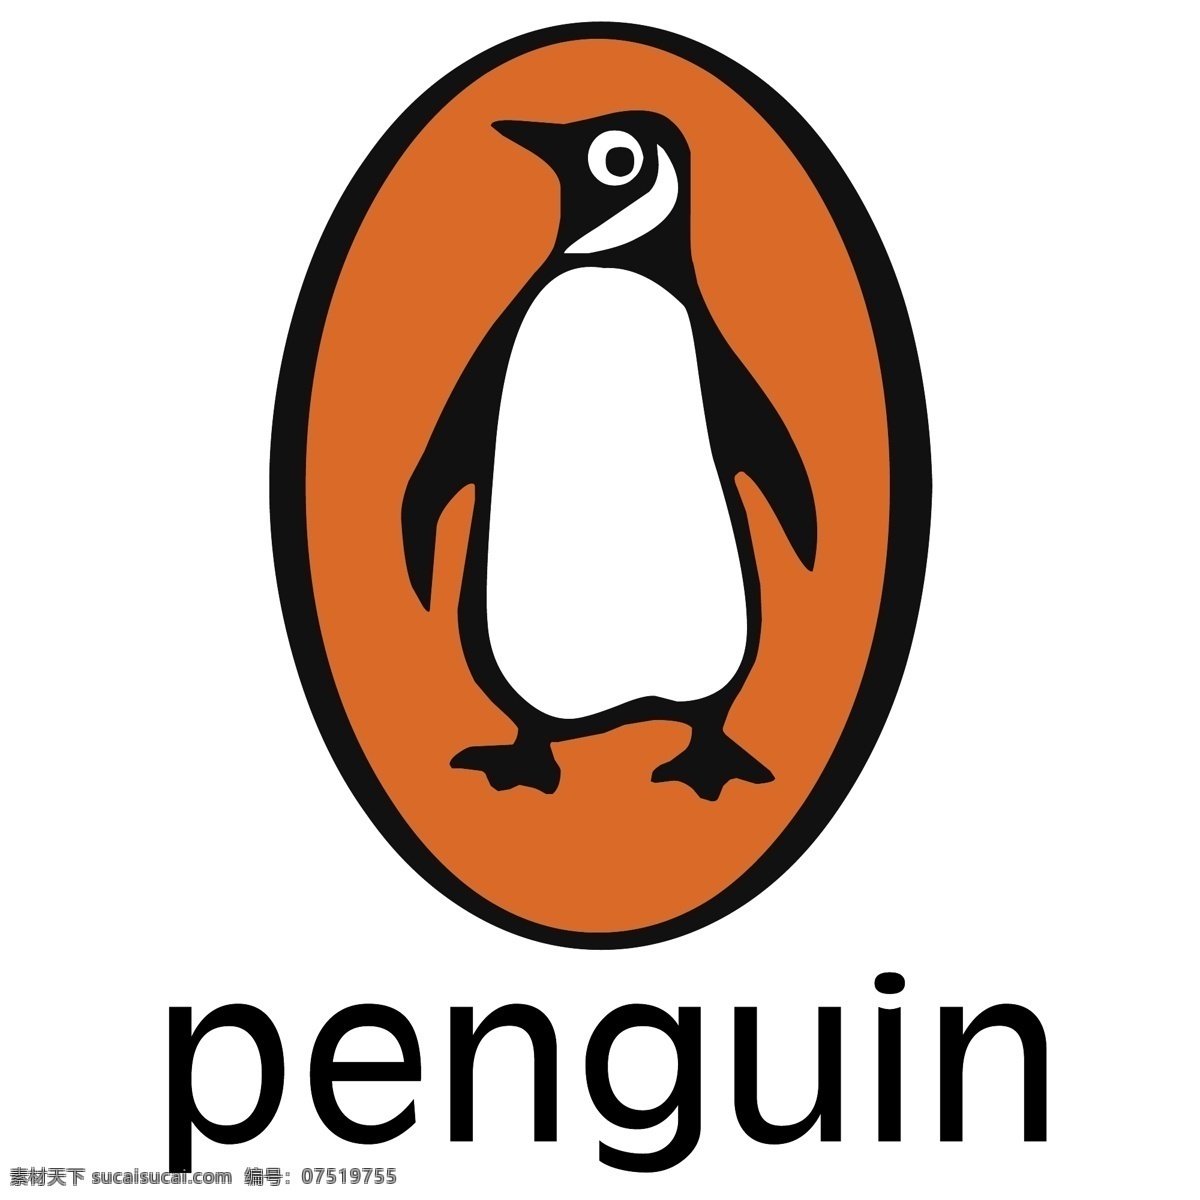 企鹅 矢量标志下载 免费矢量标识 商标 品牌标识 标识 矢量 免费 品牌 公司 白色